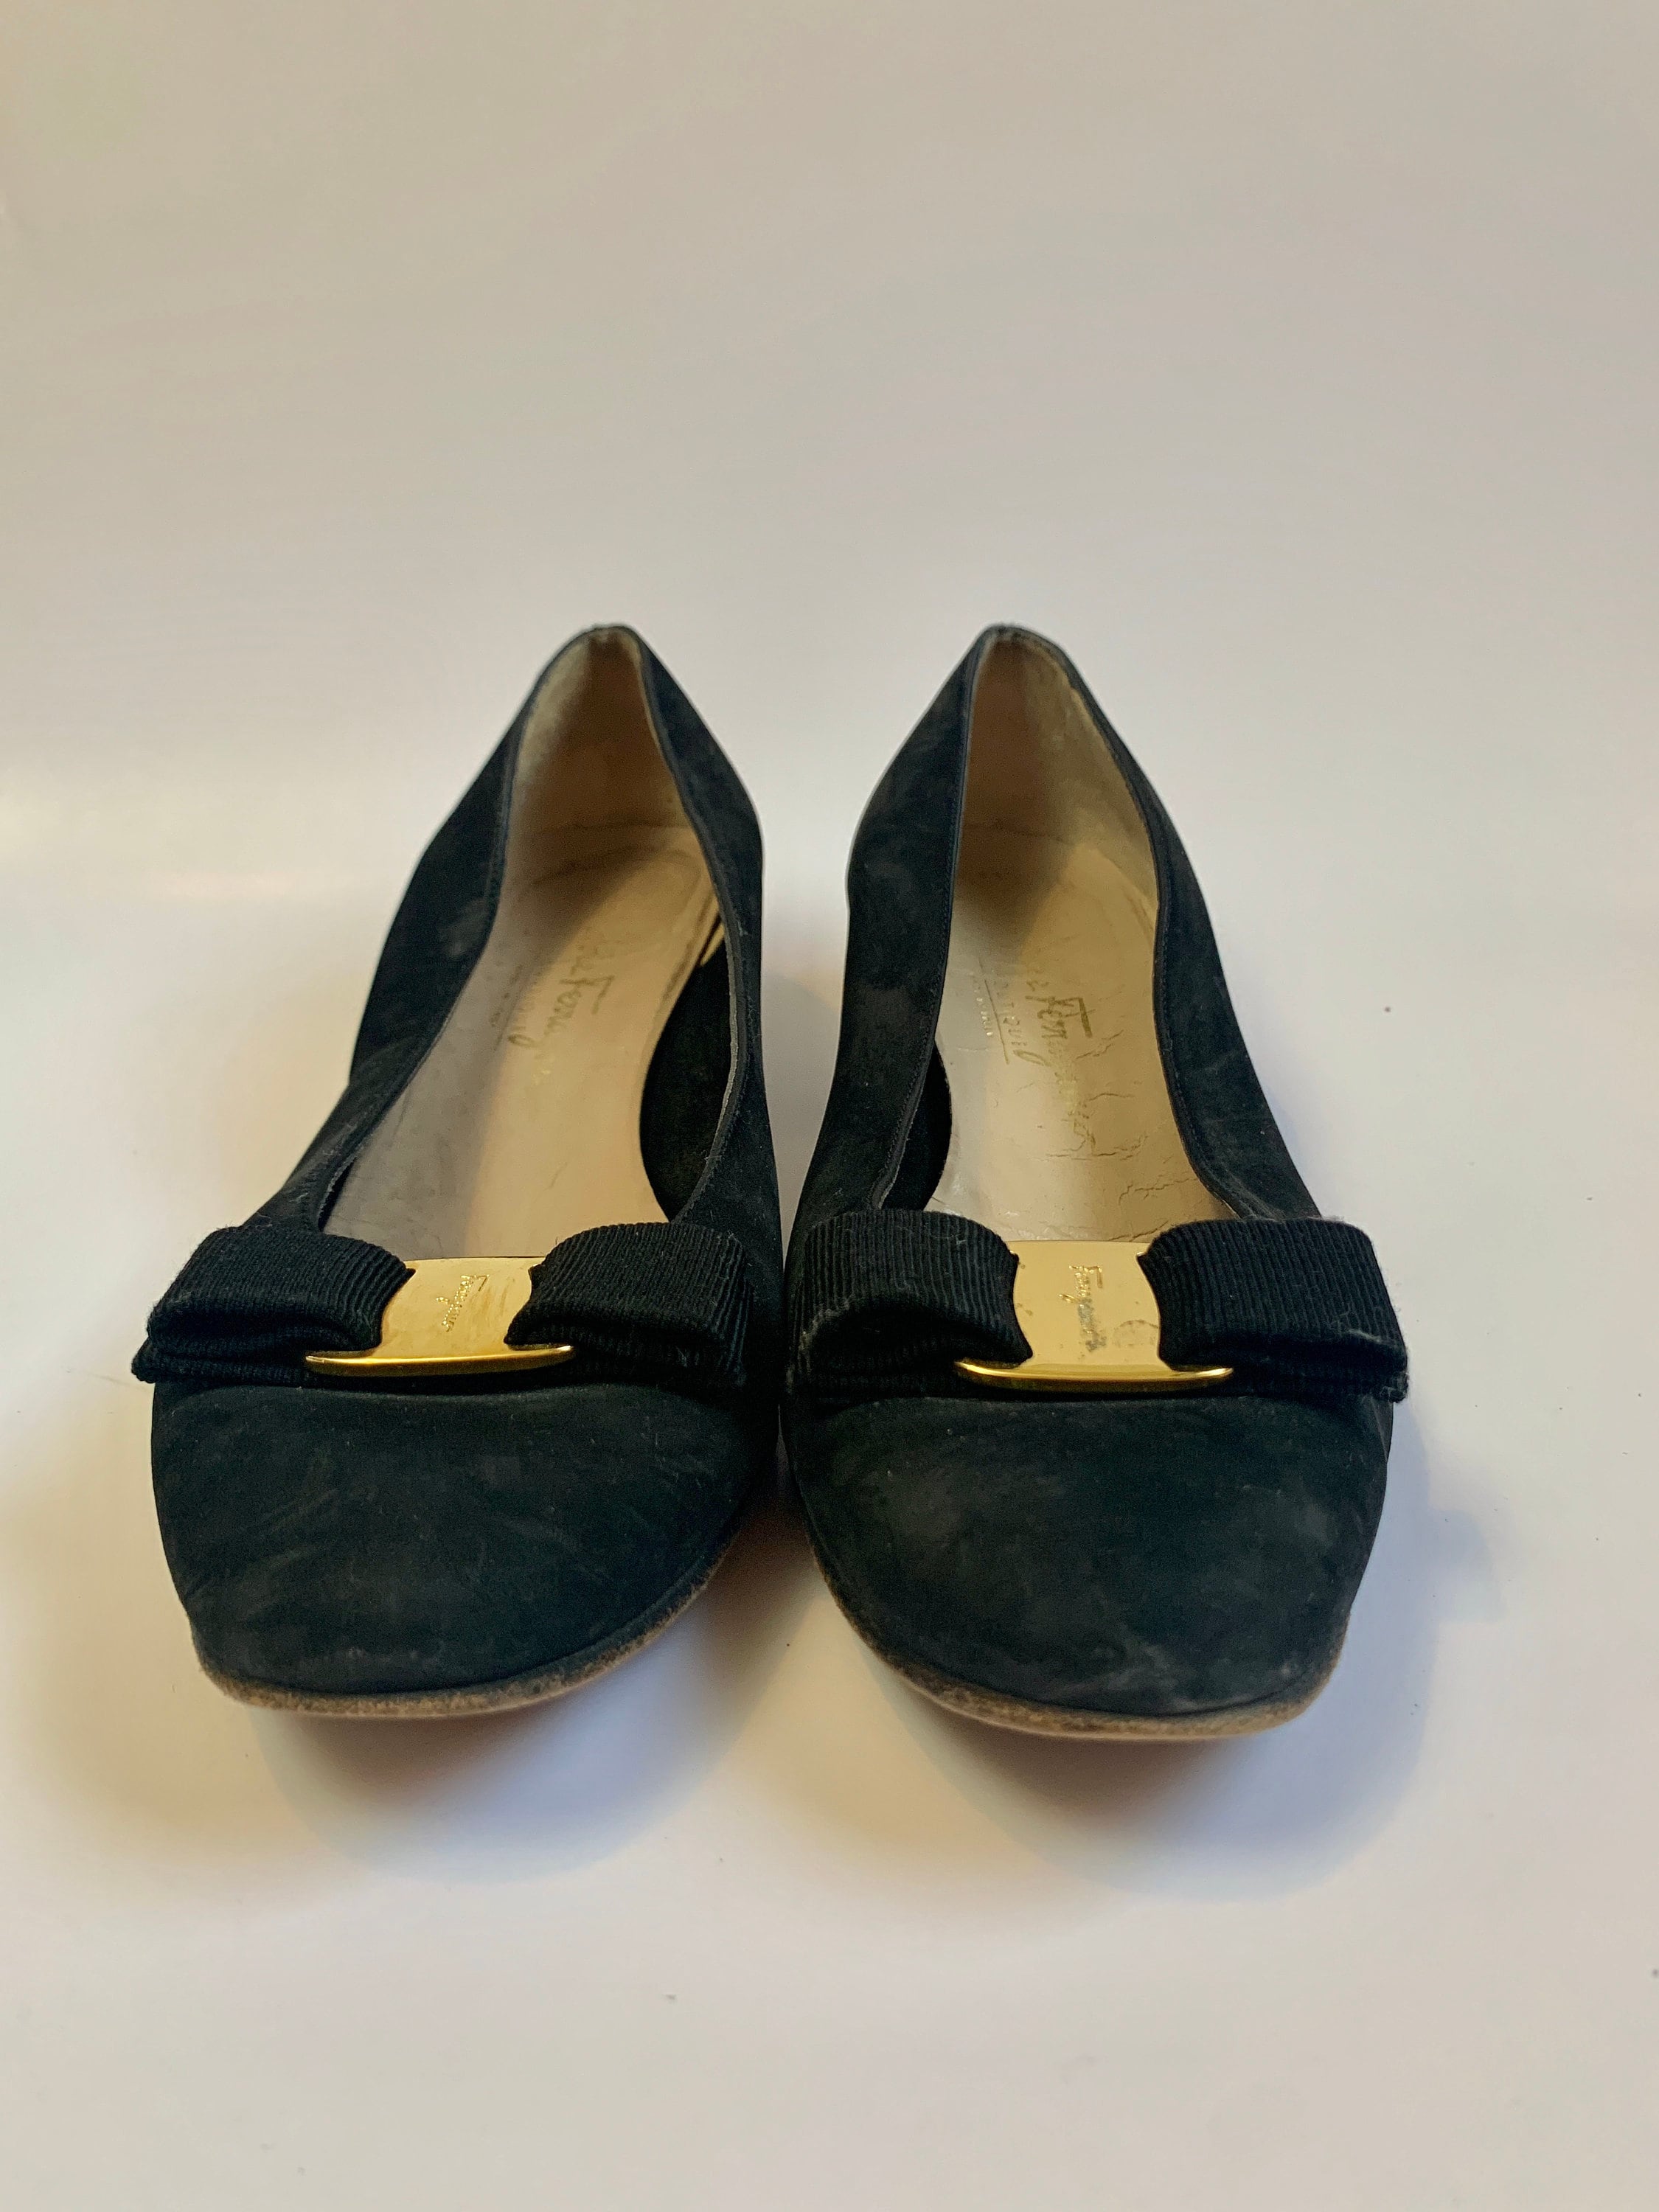 Vintage 1990s Bow Pump Heels // Black Suede Ferragamo Shoes Made